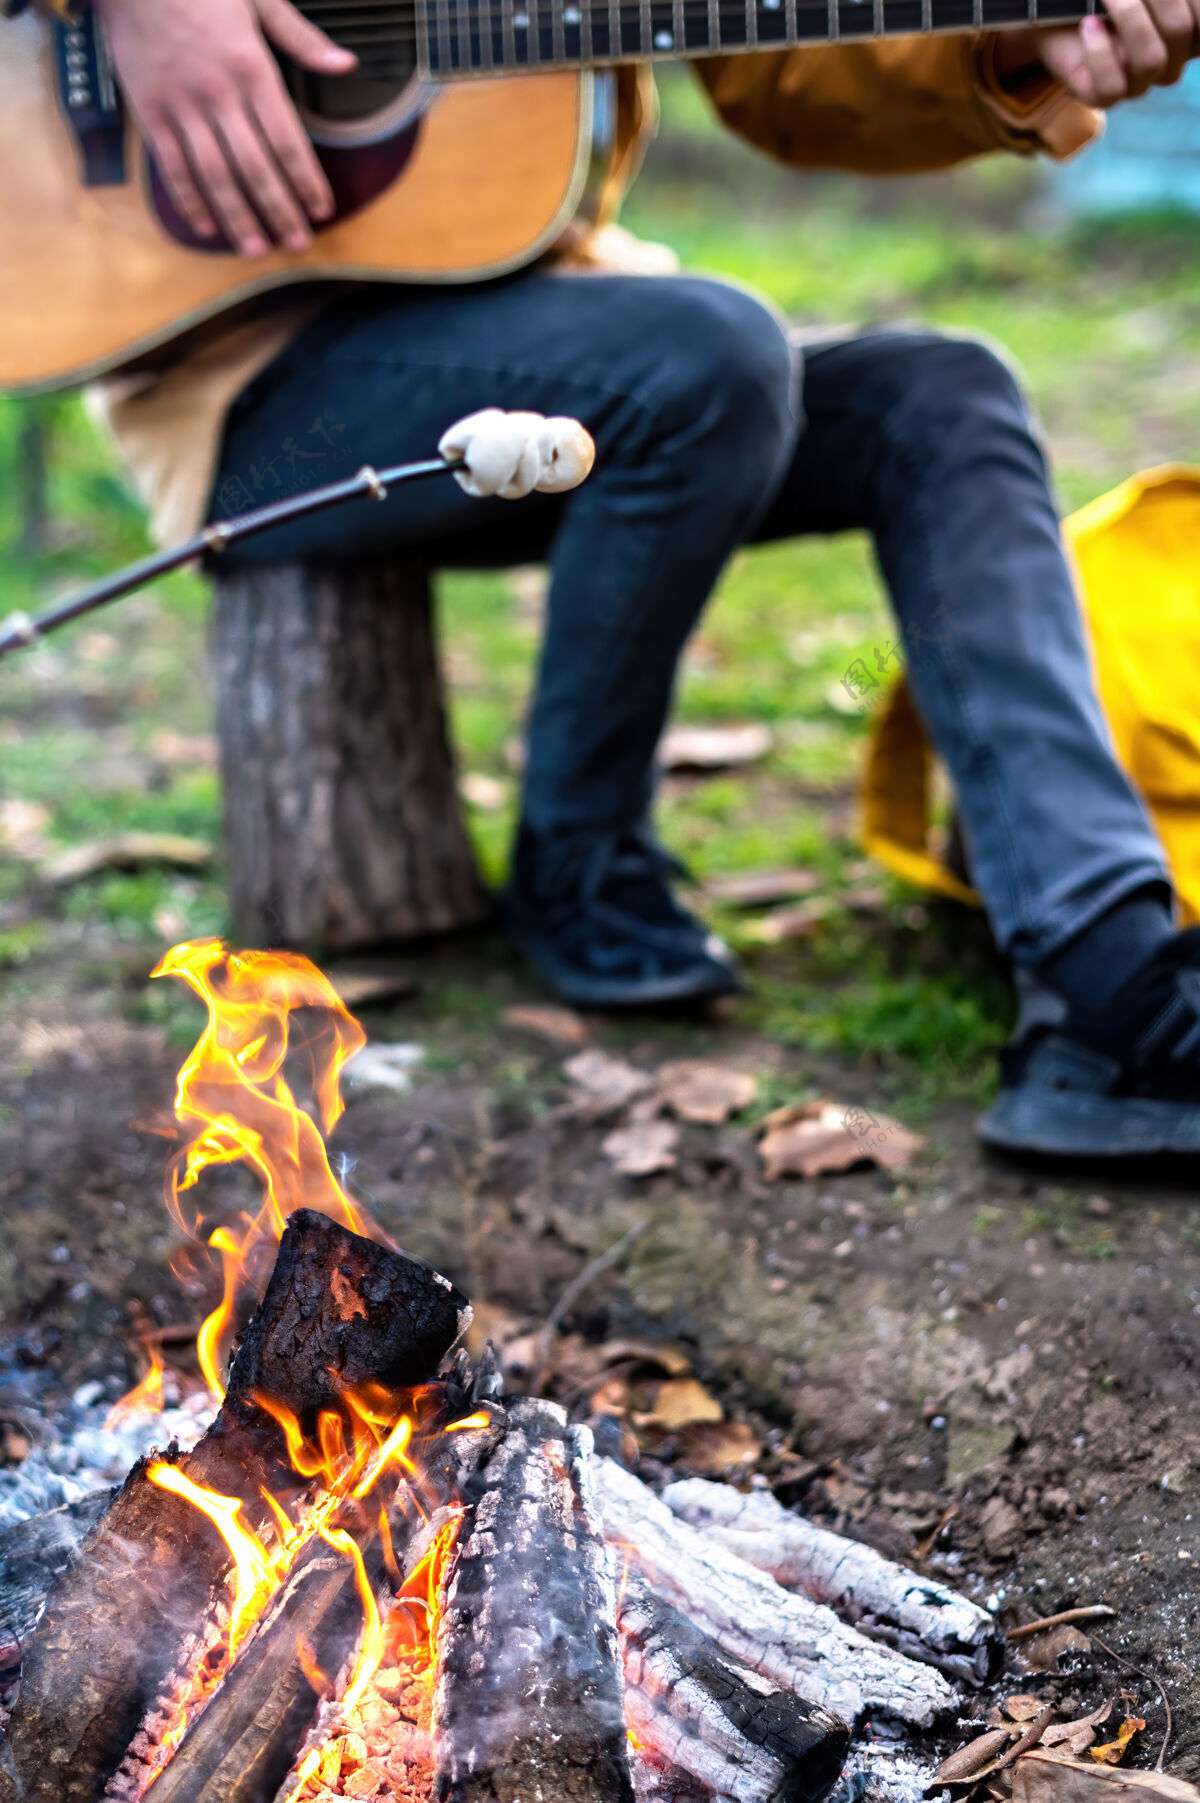 冷有篝火的野餐 一个人在弹吉他 另一个人在火上煮棉花糖温暖棉花糖烤